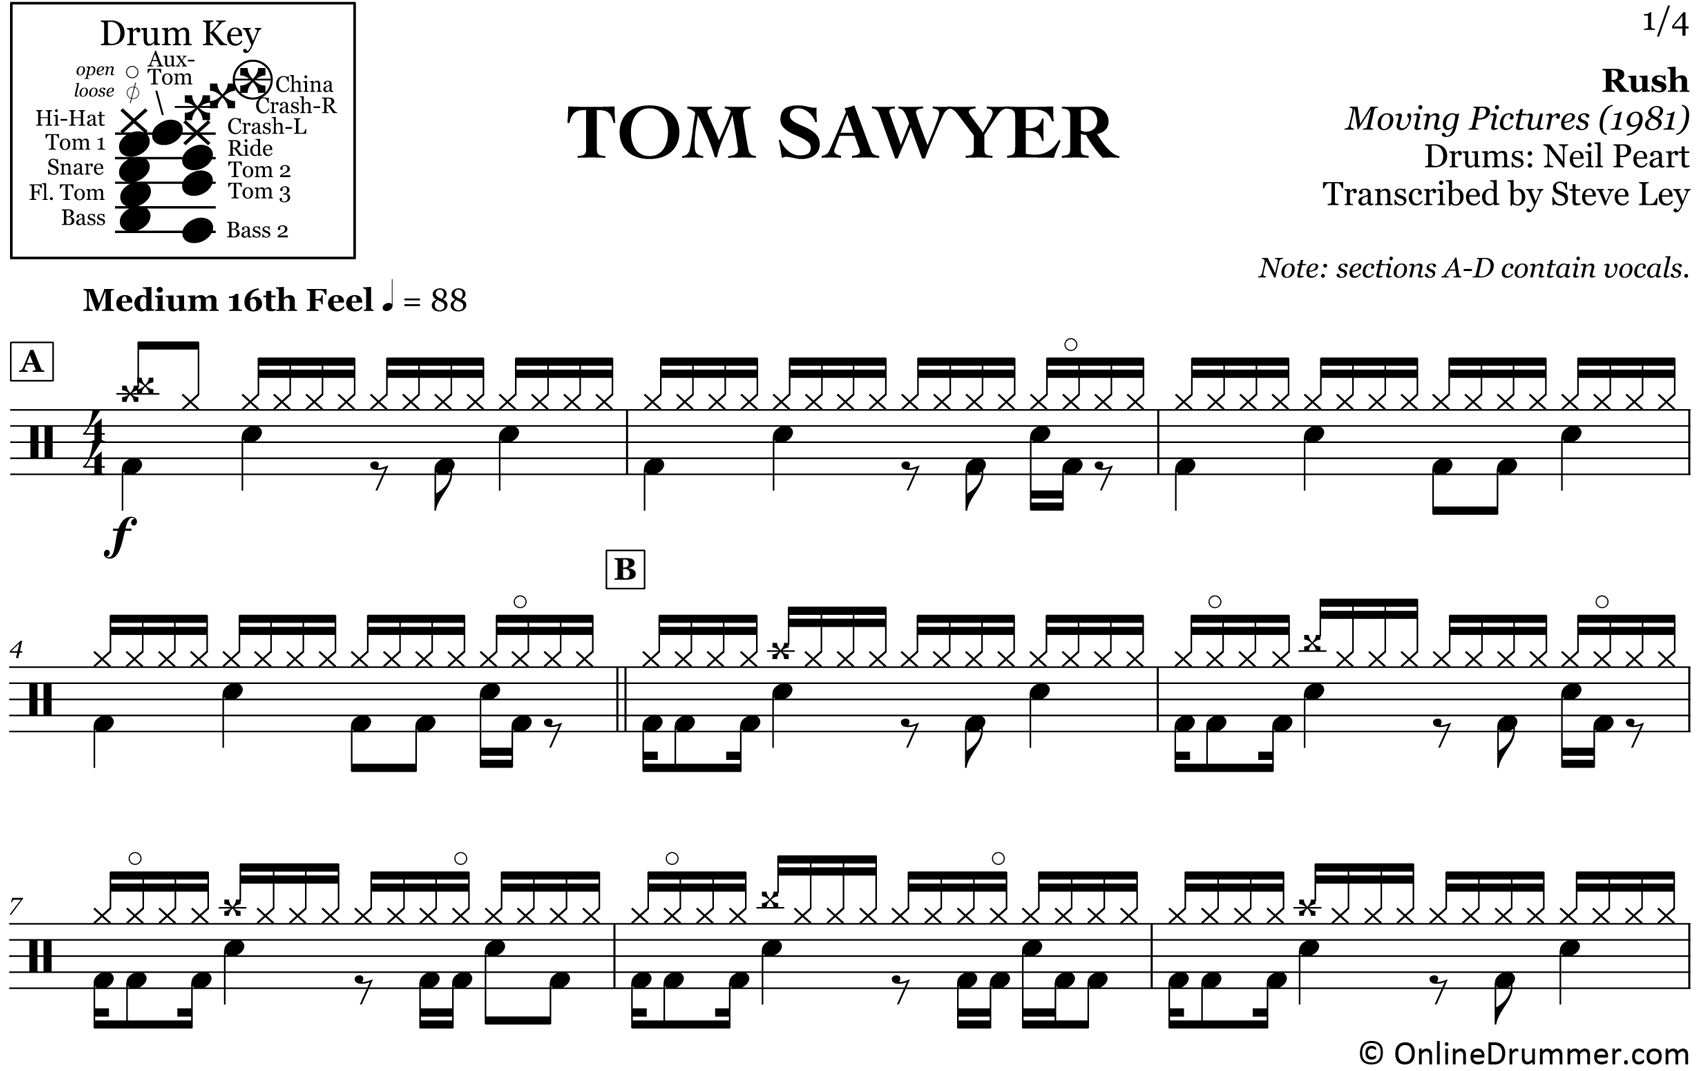 Tom Sawyer - Rush - Drum Sheet Music